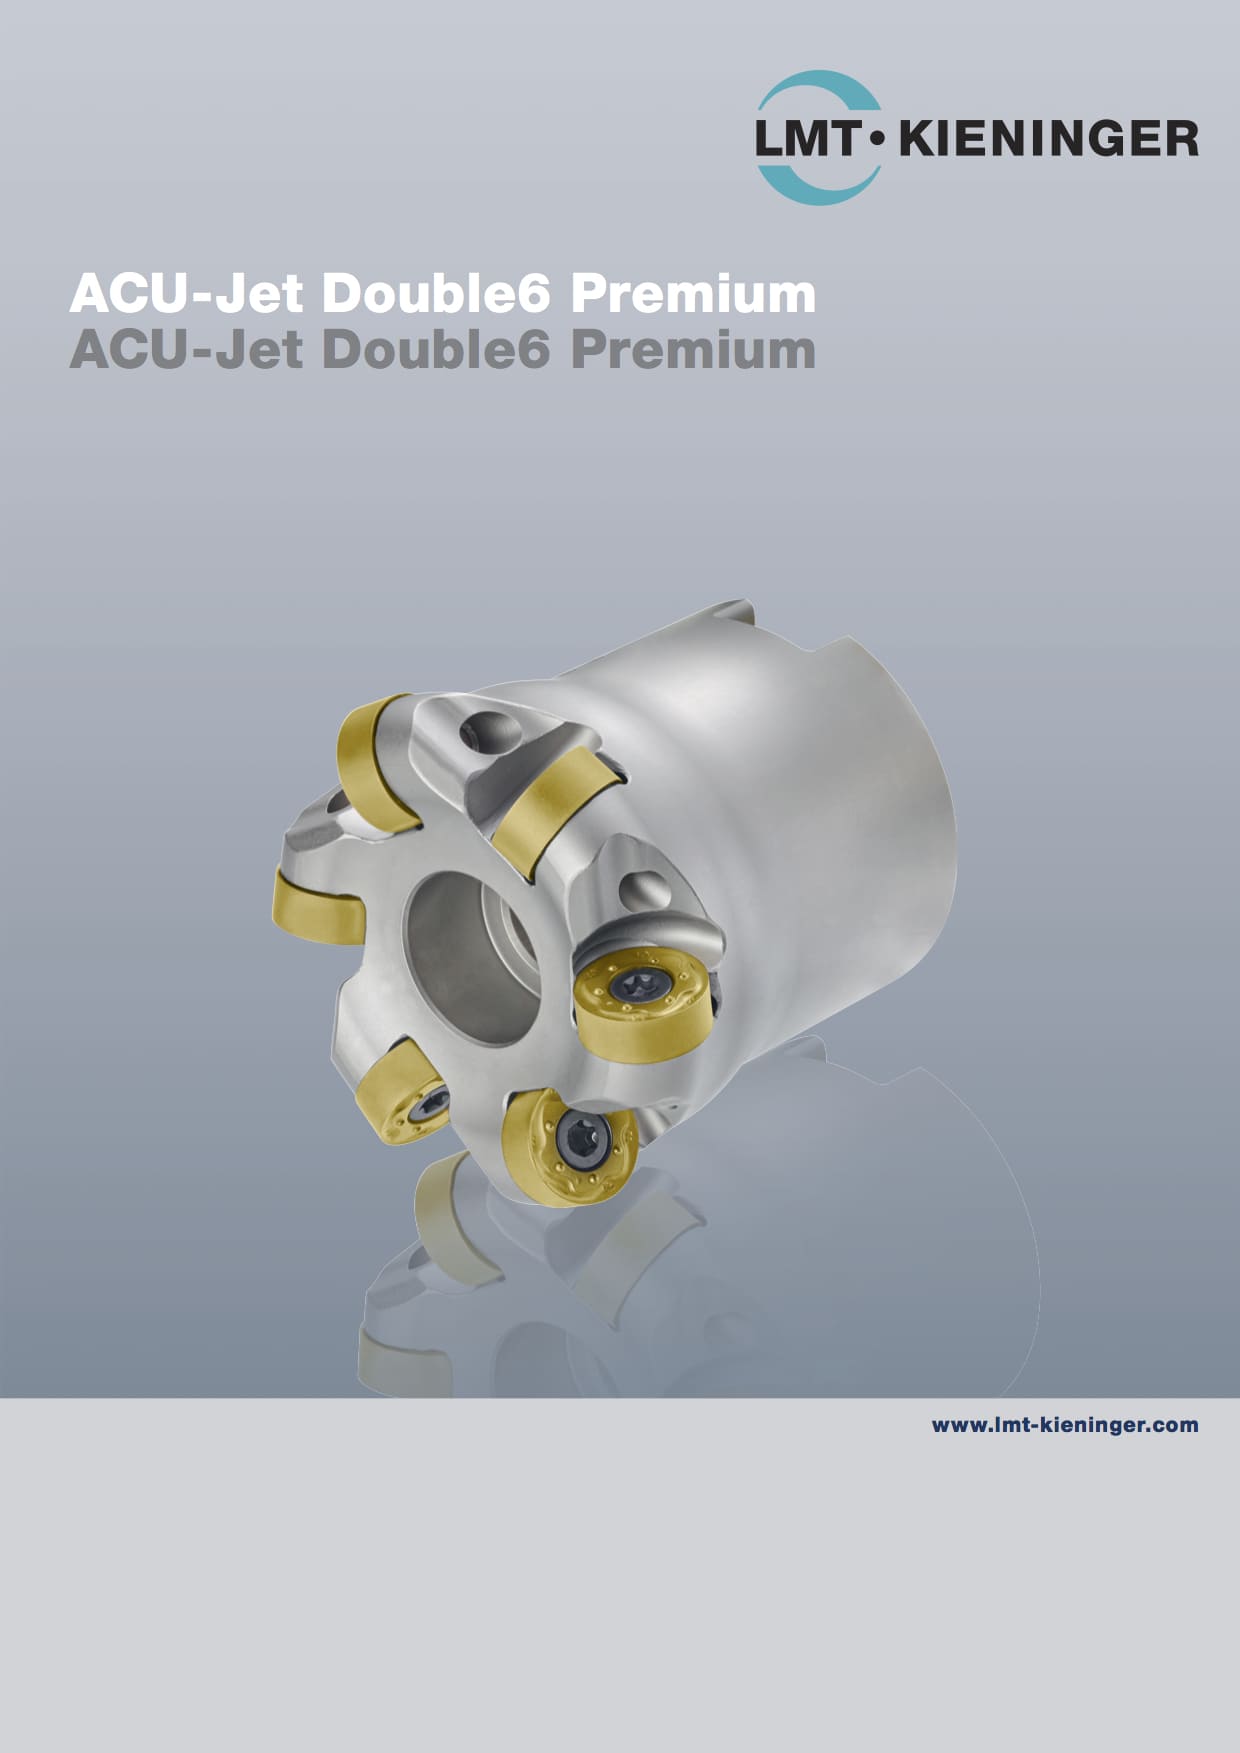 Acu-Jet Double6 Premium